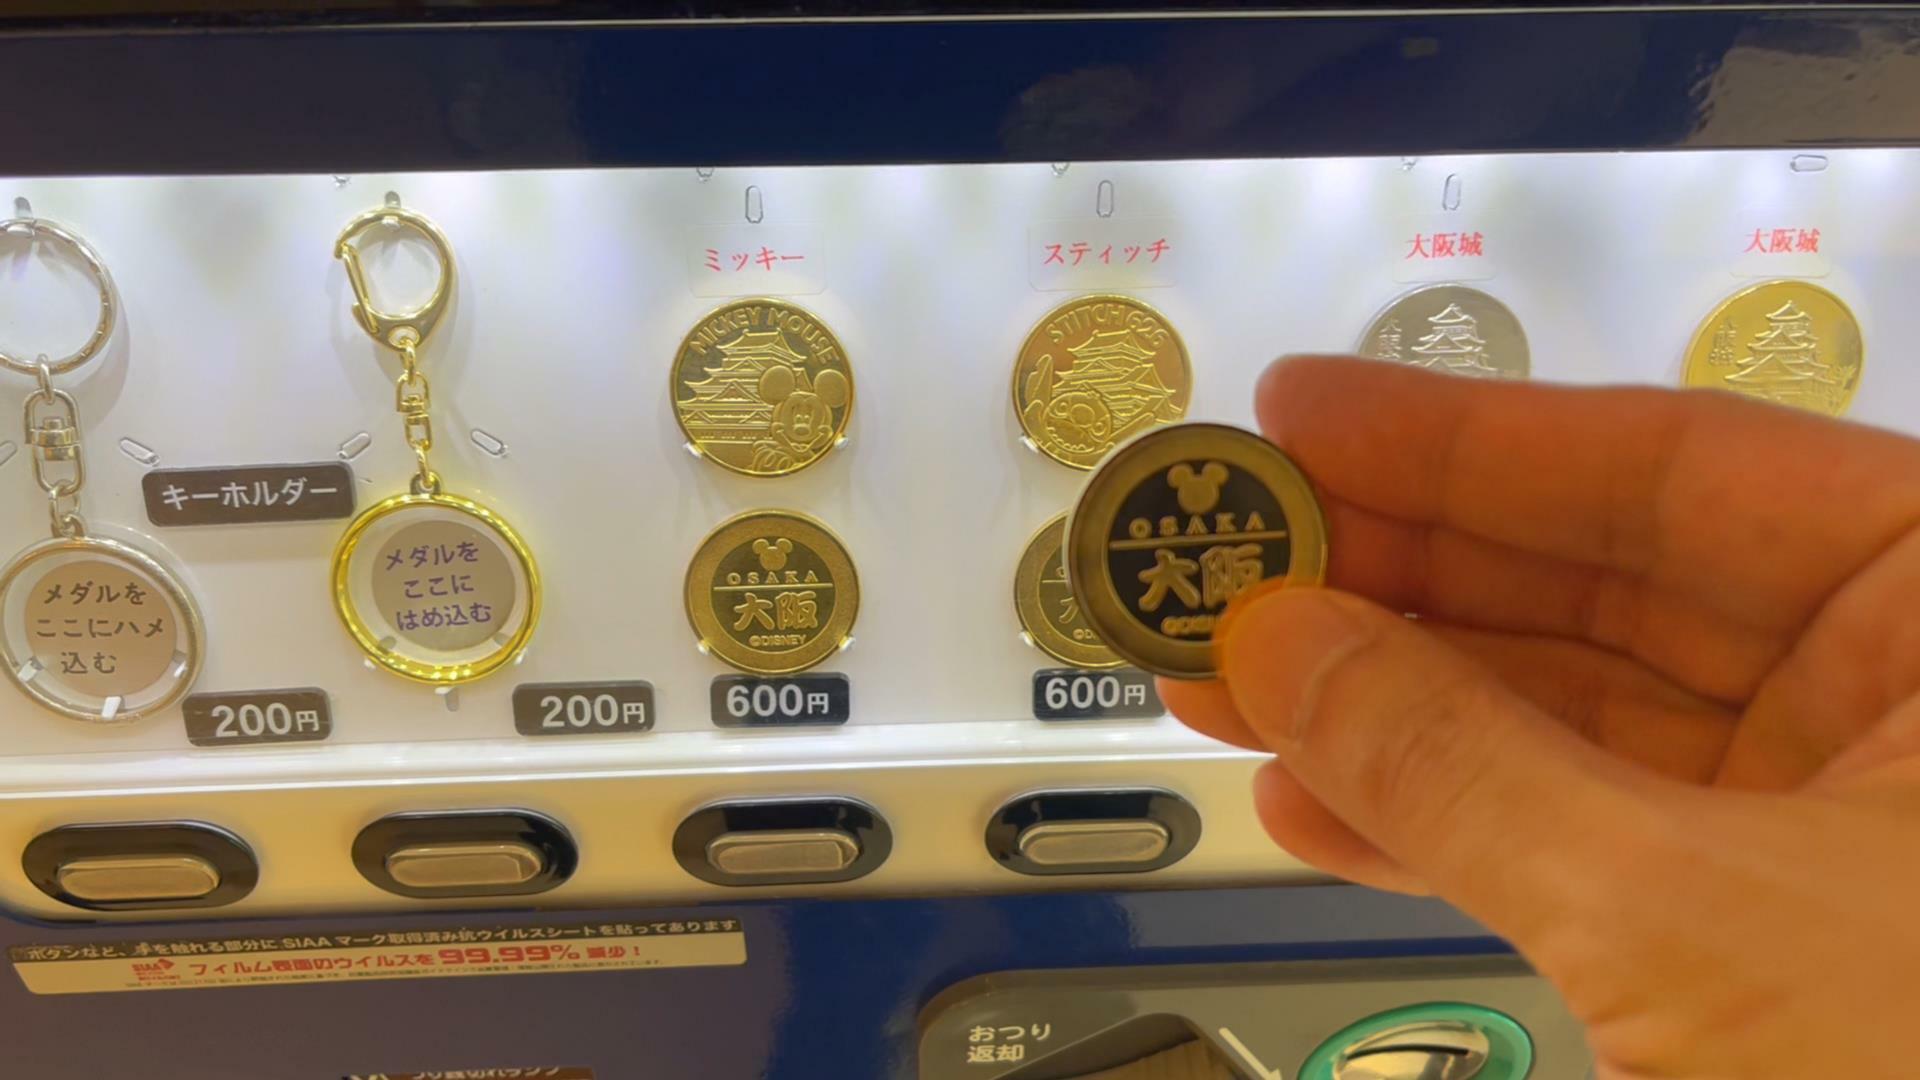 大阪城のメダル販売機　裏面に「大阪」と漢字で書かれたメダルを購入